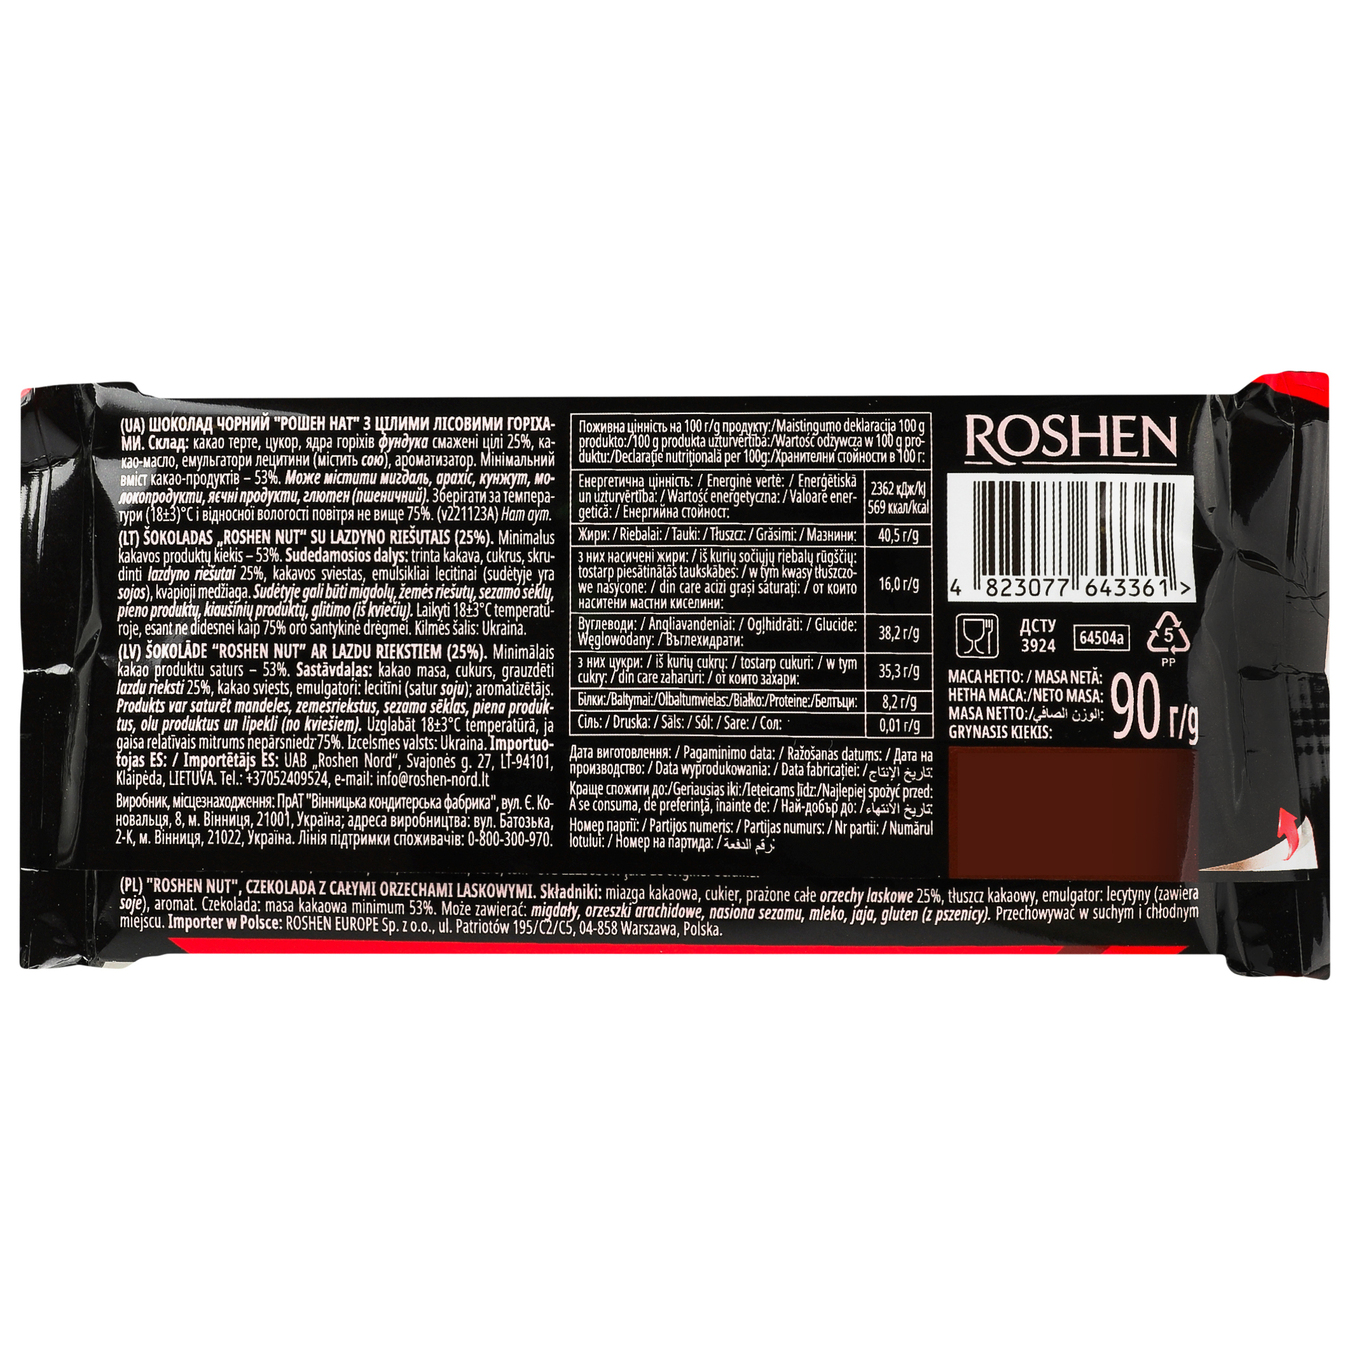 Roshen Nut black chocolate with whole hazelnut 90g 2